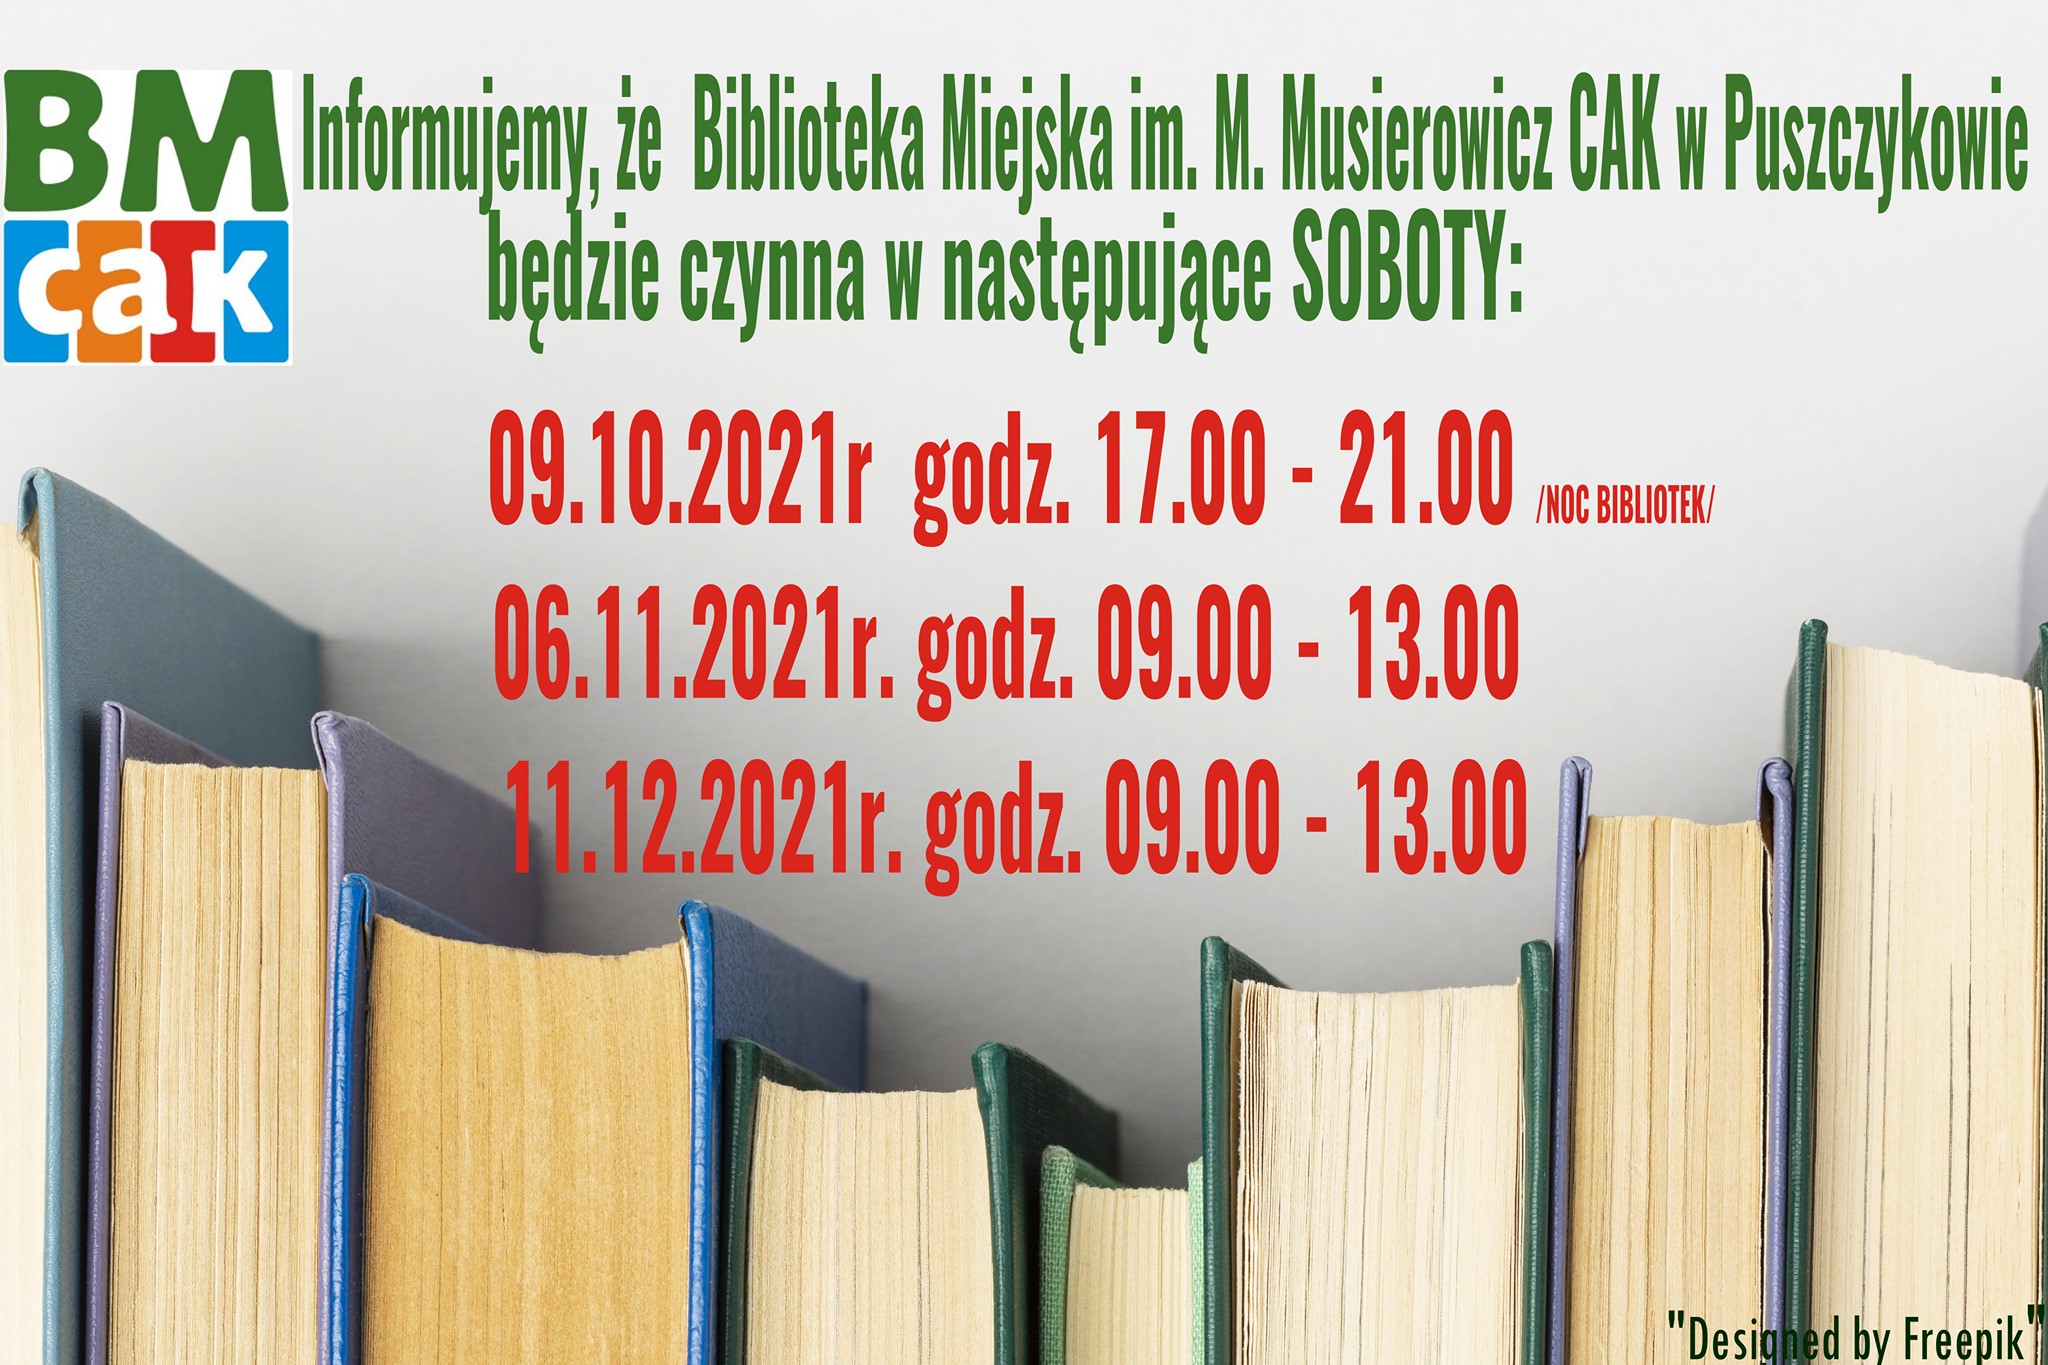 Biblioteka Miejska im. M. Musierowicz CAK w Puszczykowie będzie czynna w soboty: 6 i 11 listopada.